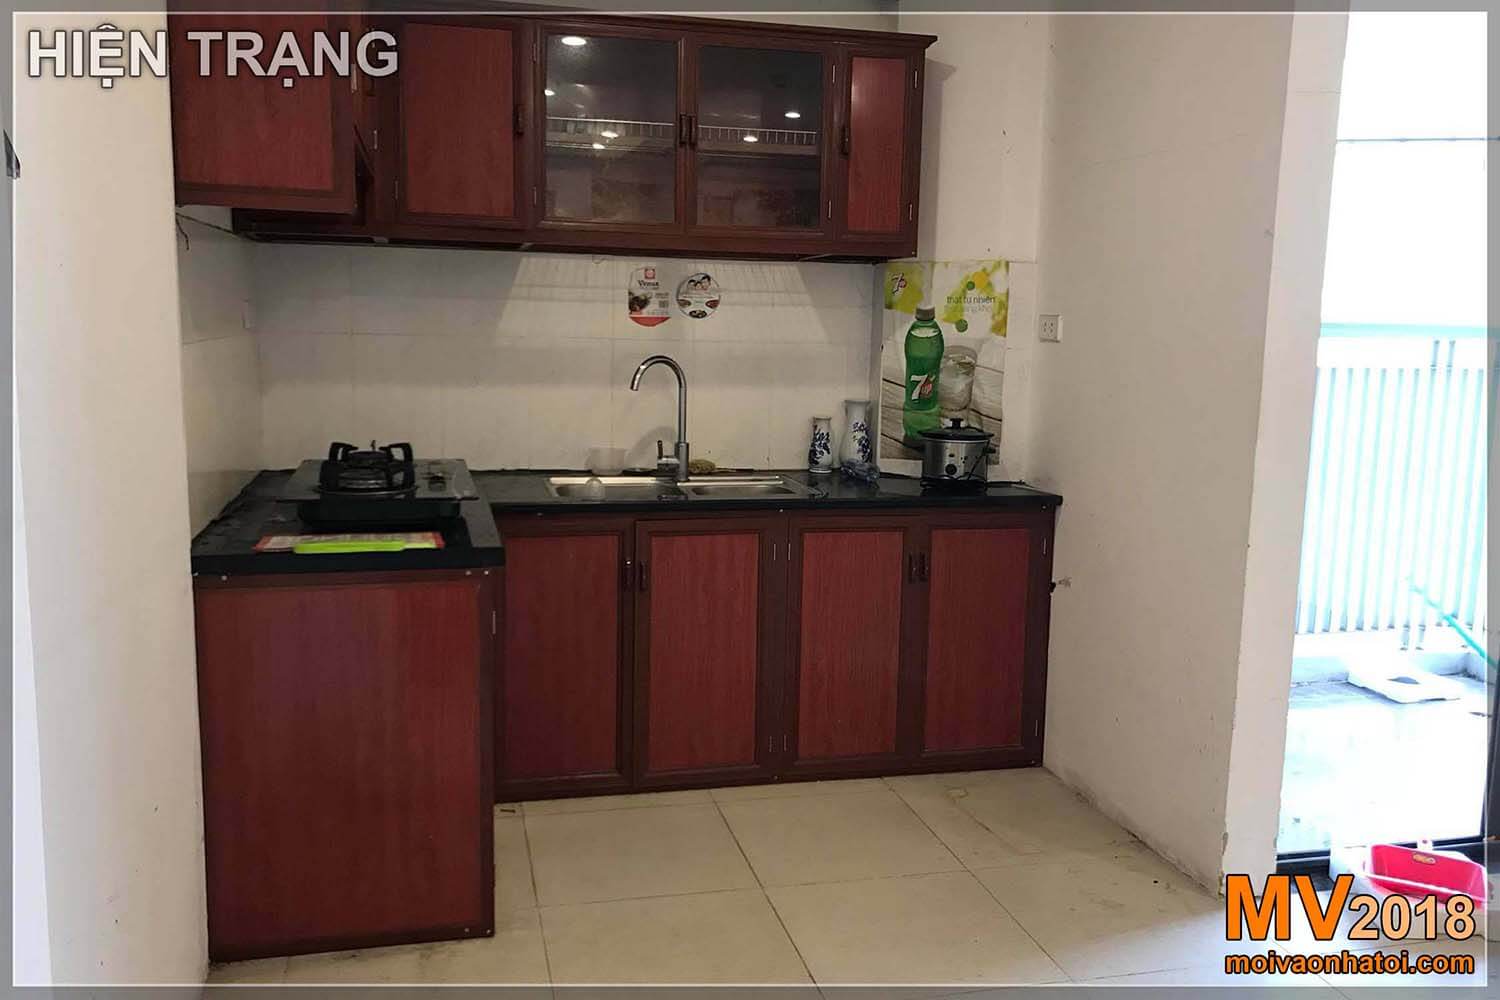 Situazione attuale della cucina nell'area urbana di Dang Xa Gia Lam